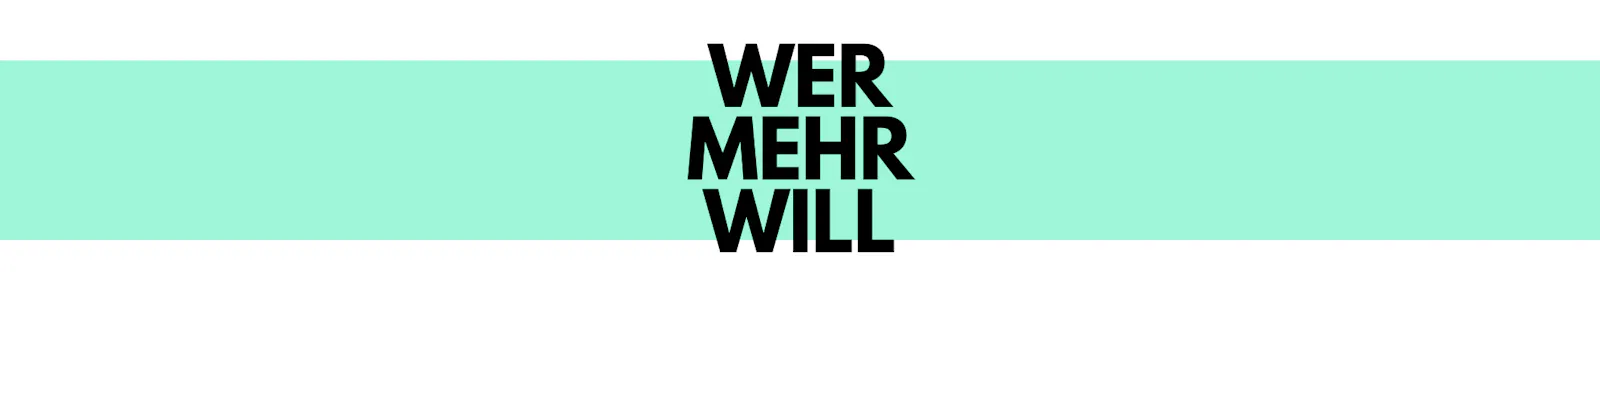 Ein Banner, der als Text-Trenner fungiert. Er zeigt die Worte des Folgeabschnitts: "Wer mehr will"